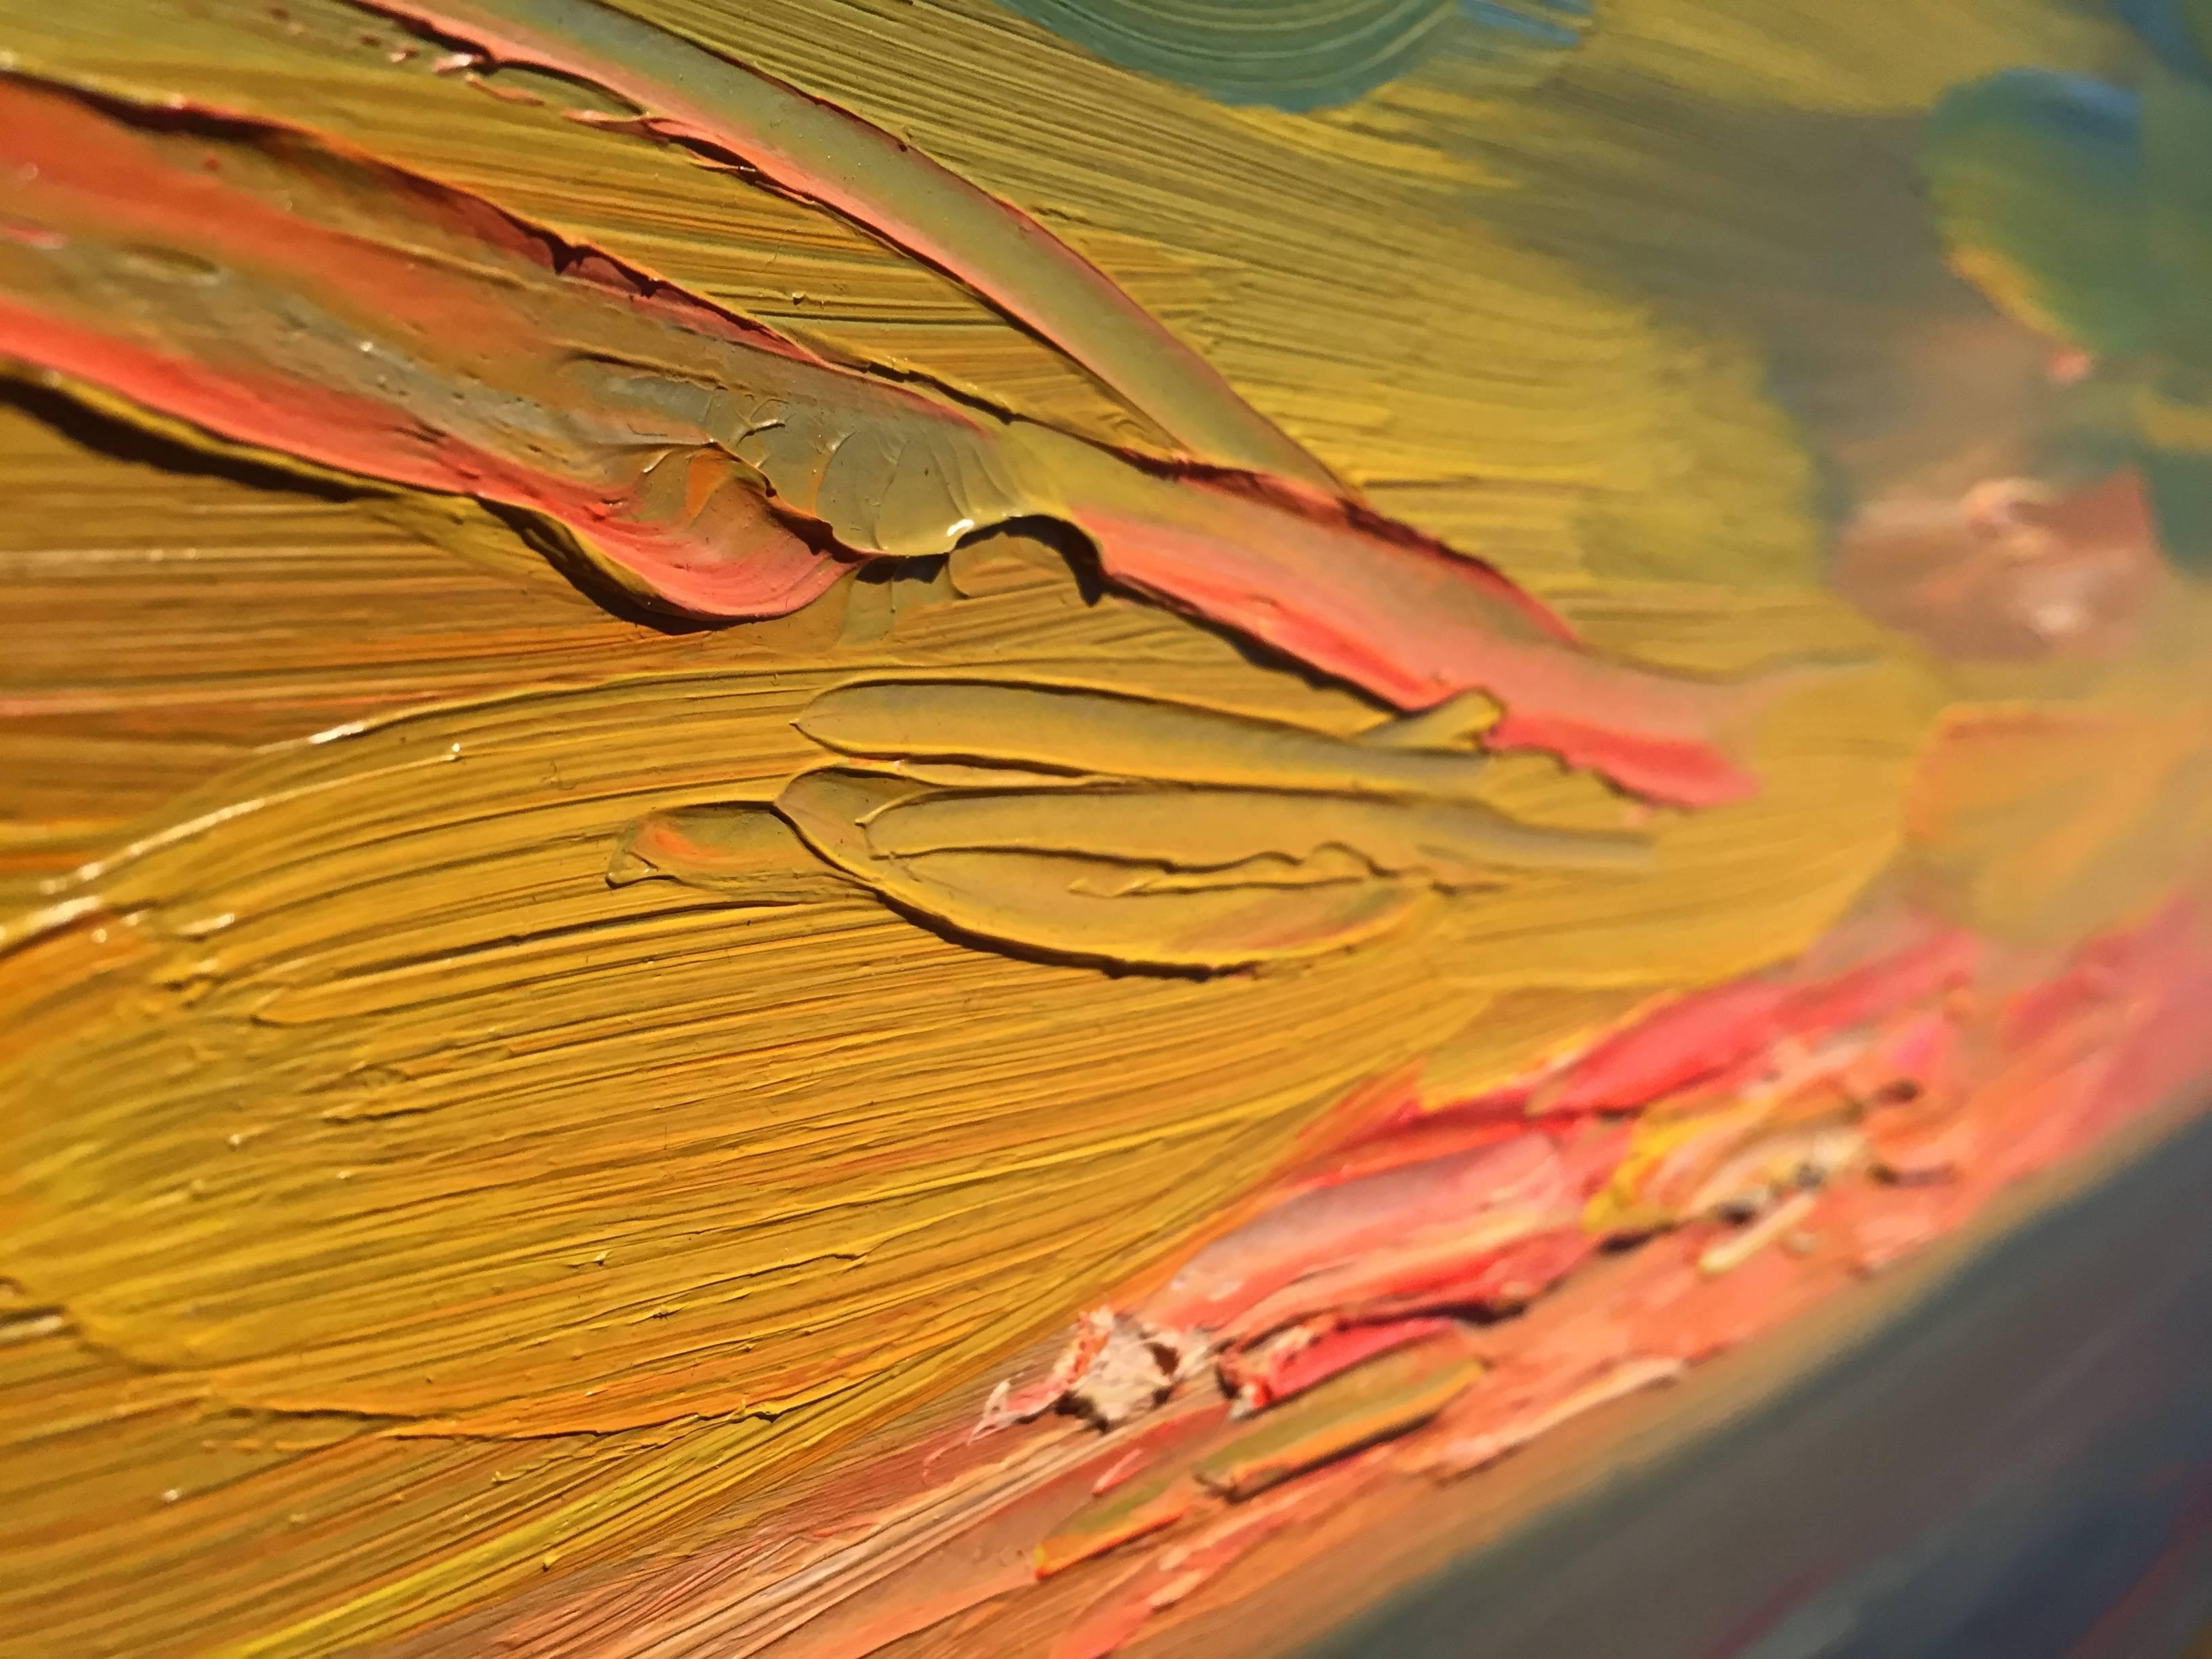 Représentation abstraite d'un paysage marin au coucher du soleil. Peint d'après nature à Waterford, Connecticut. Encadré dans un cadre traditionnel noir avec bordure intérieure dorée (voir photos).

Nelson H. Whiting est né à New London, dans le